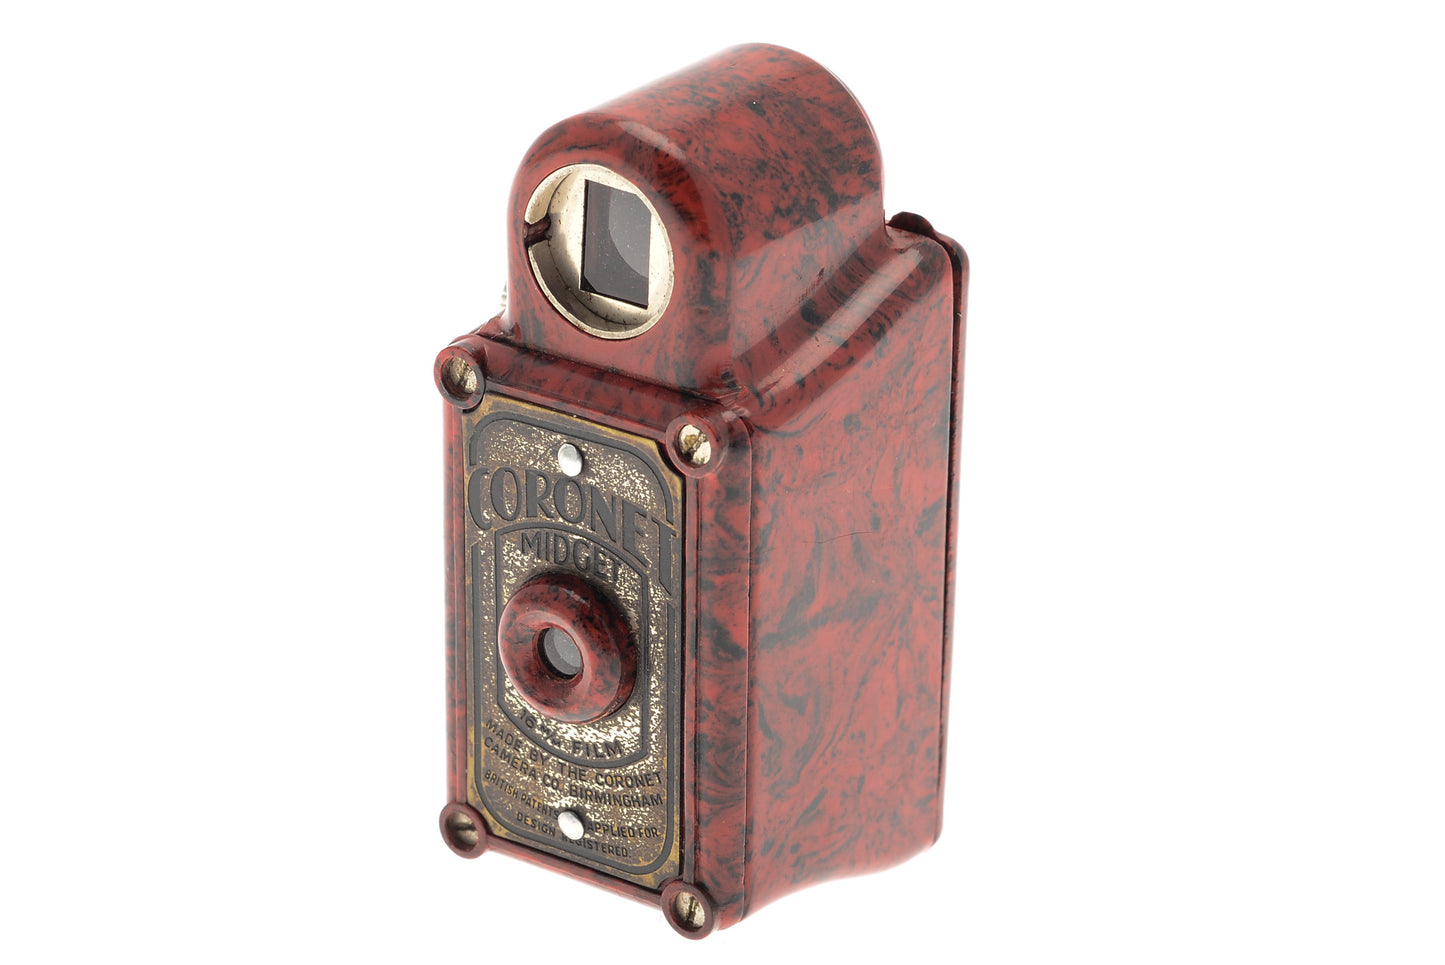 Coronet Midget - Camera